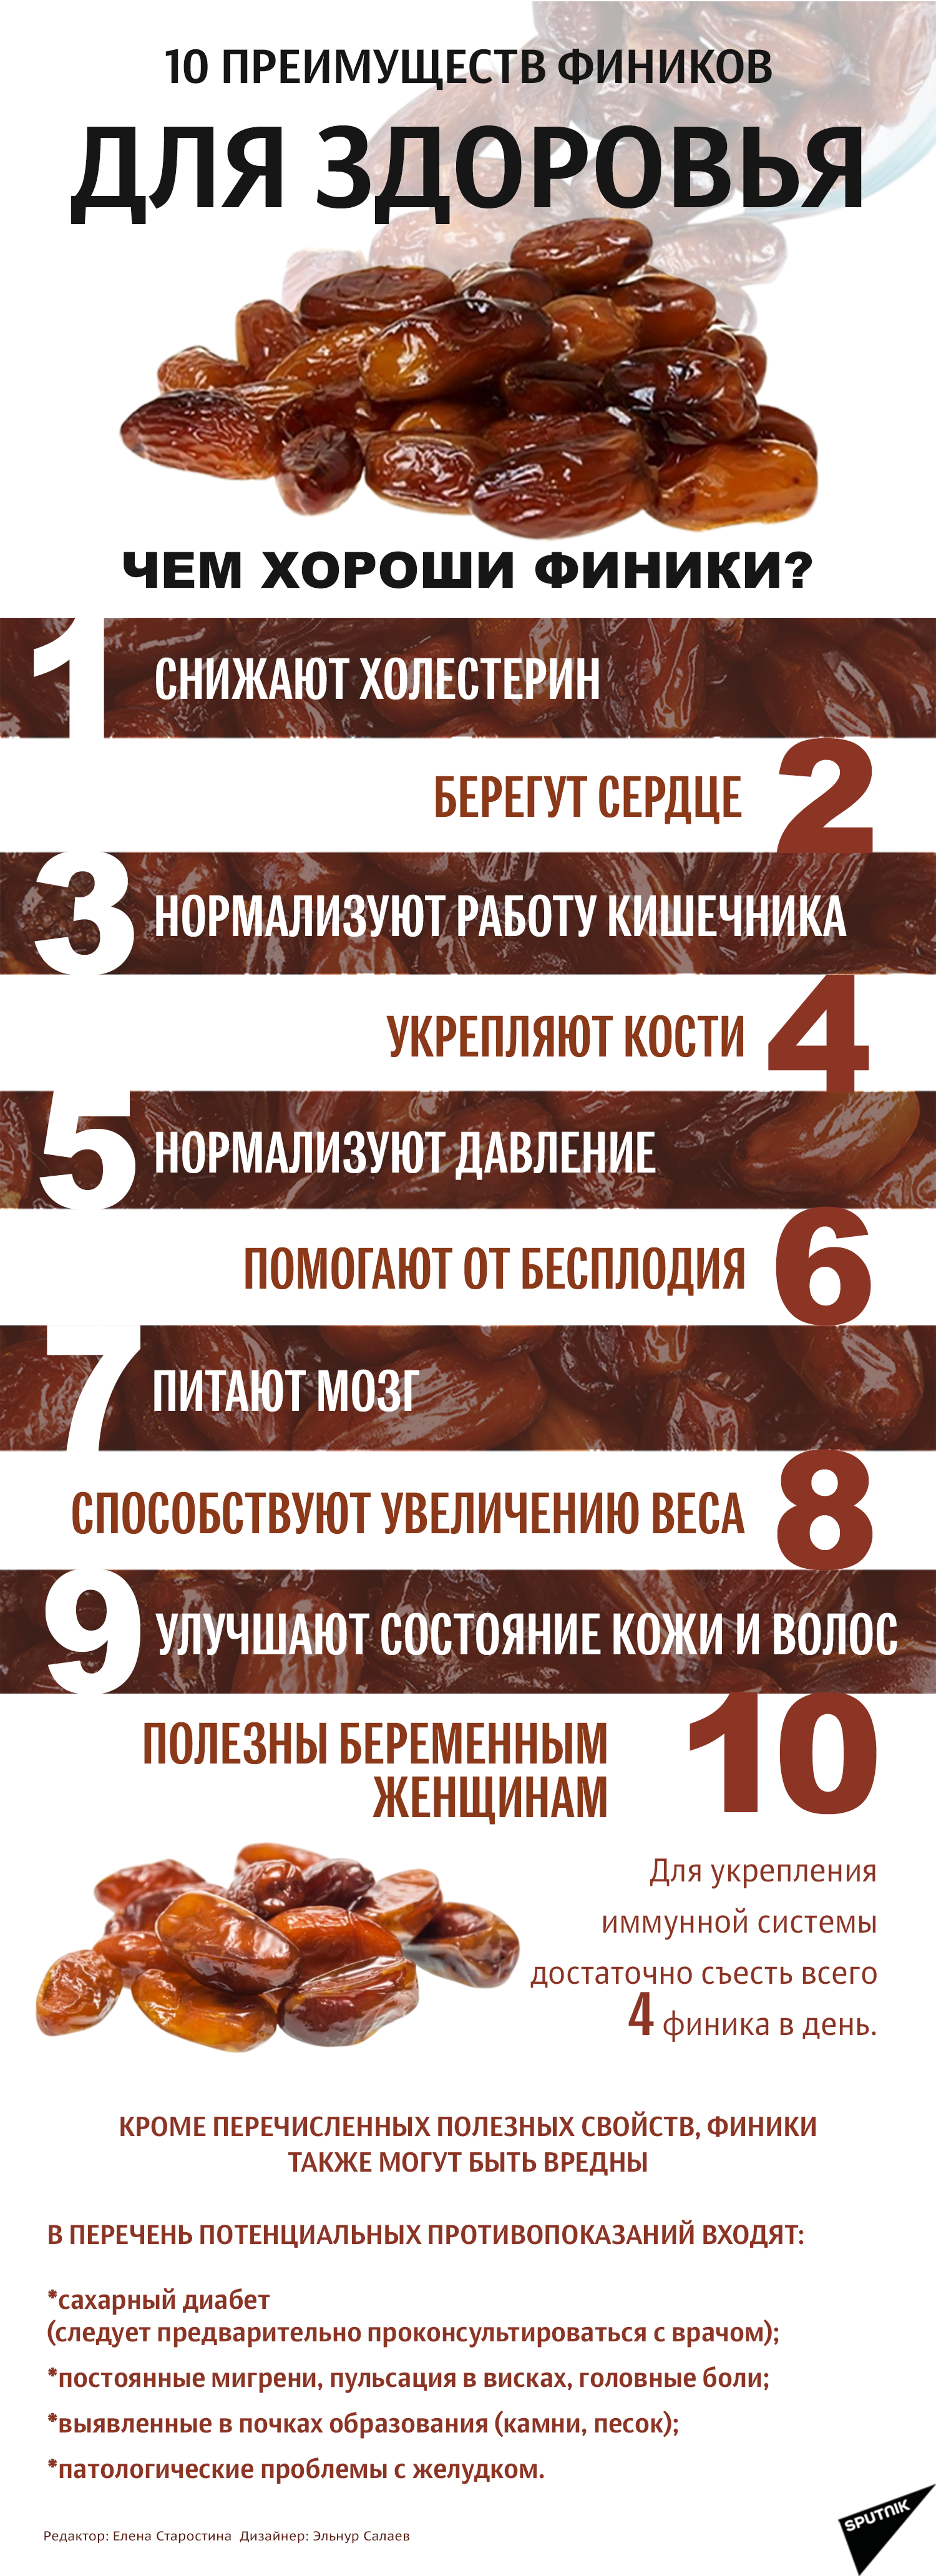 инфографика - 10 преимуществ фиников для здоровья - Sputnik Азербайджан